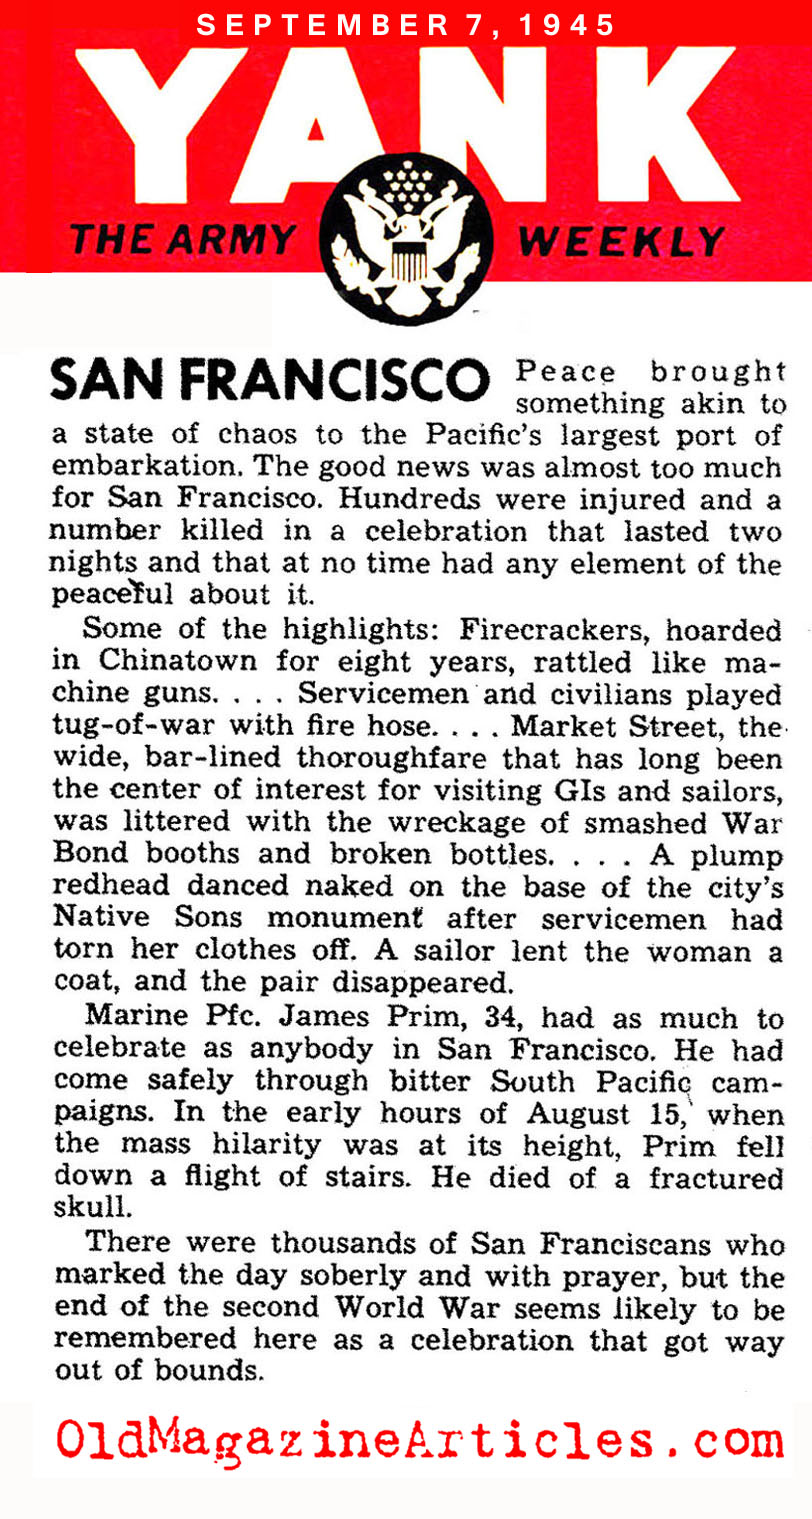 VJ Day in San Francisco (Yank Magazine, 1945)